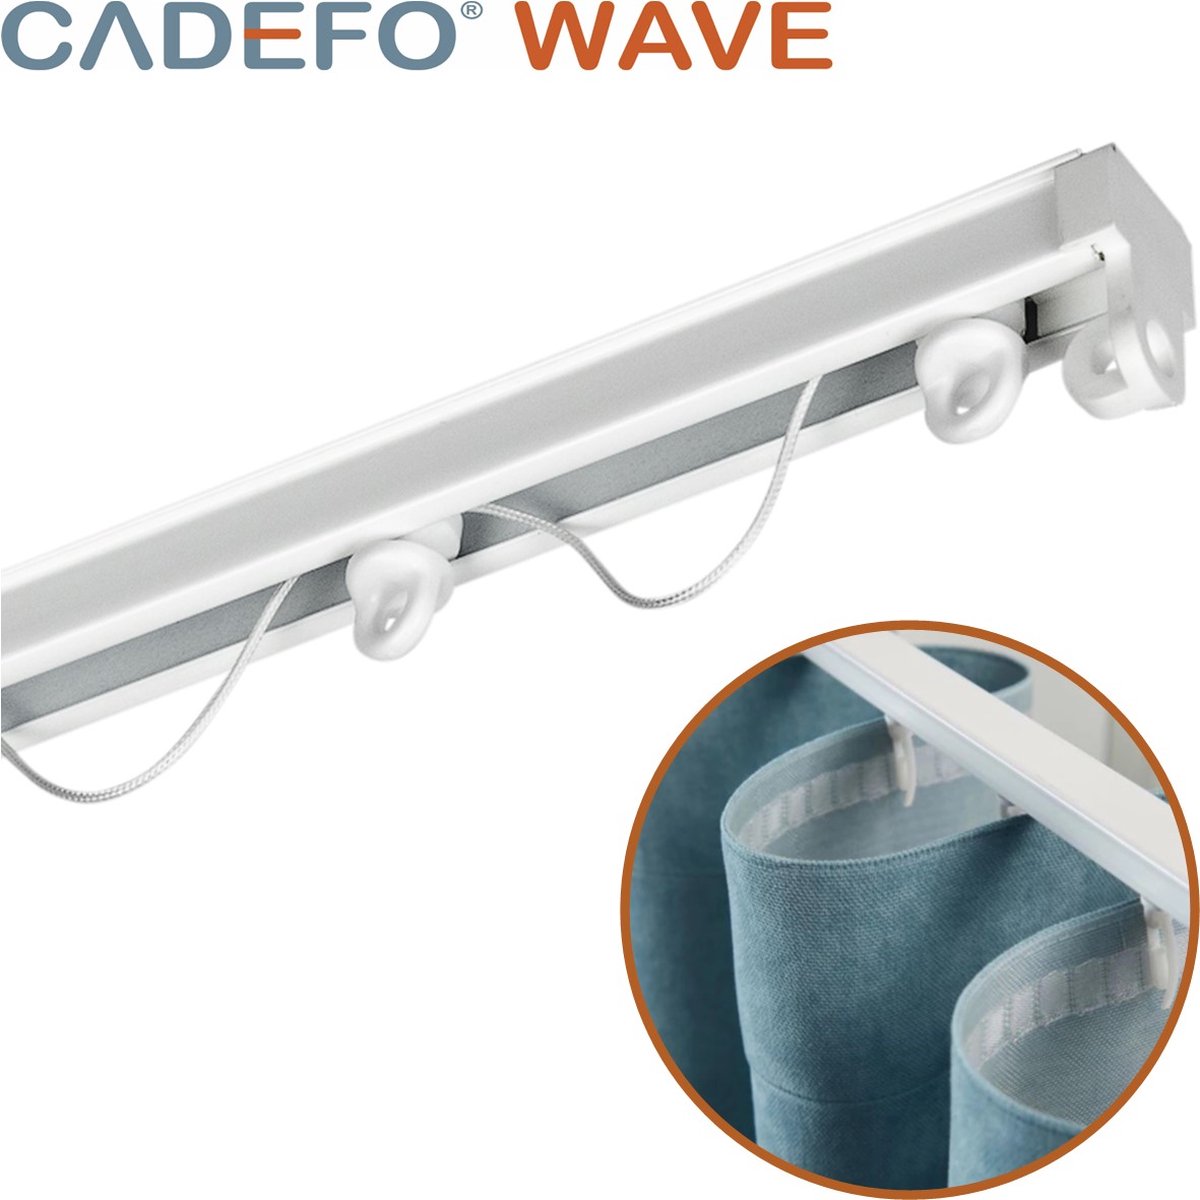 CADEFO WAVE (351 - 400 cm) Gordijnrails - Compleet op maat! - UIT 1 STUK - Leverbaar tot 6 meter - Plafondbevestiging - Lengte 396 cm